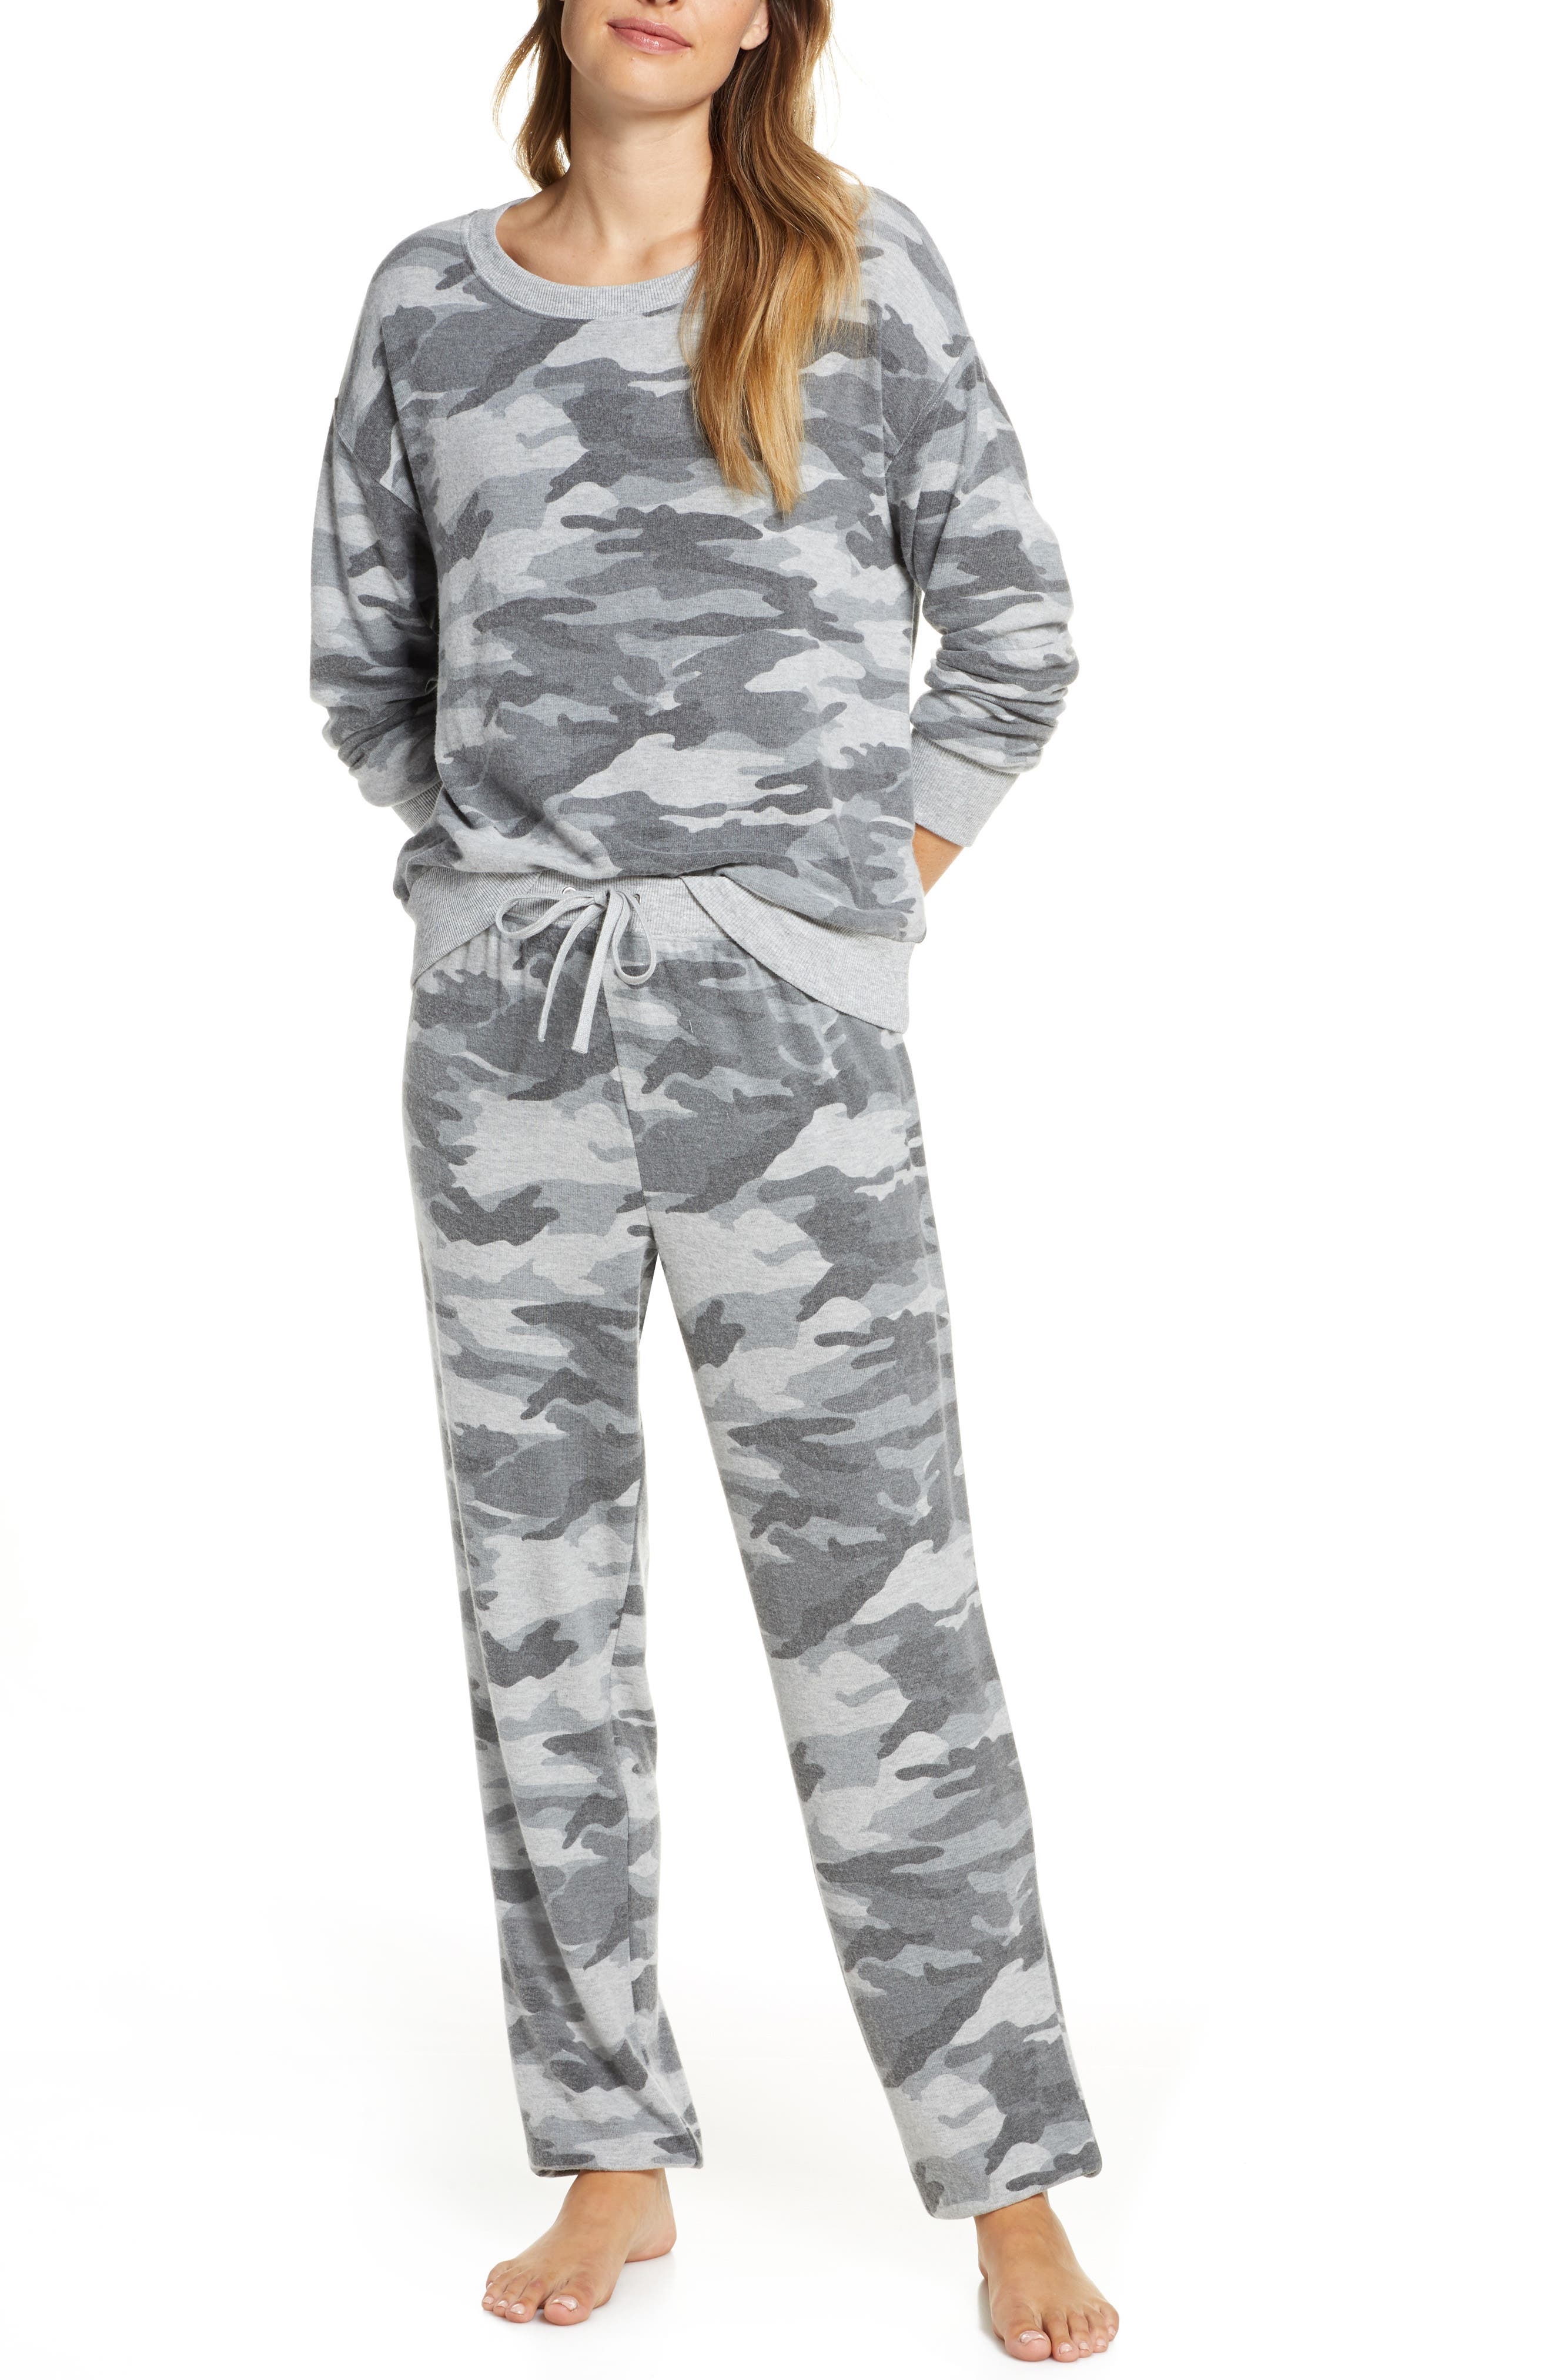 UPC 046094968116 - Women's Splendid Long Sleeve Pajamas, Size Large